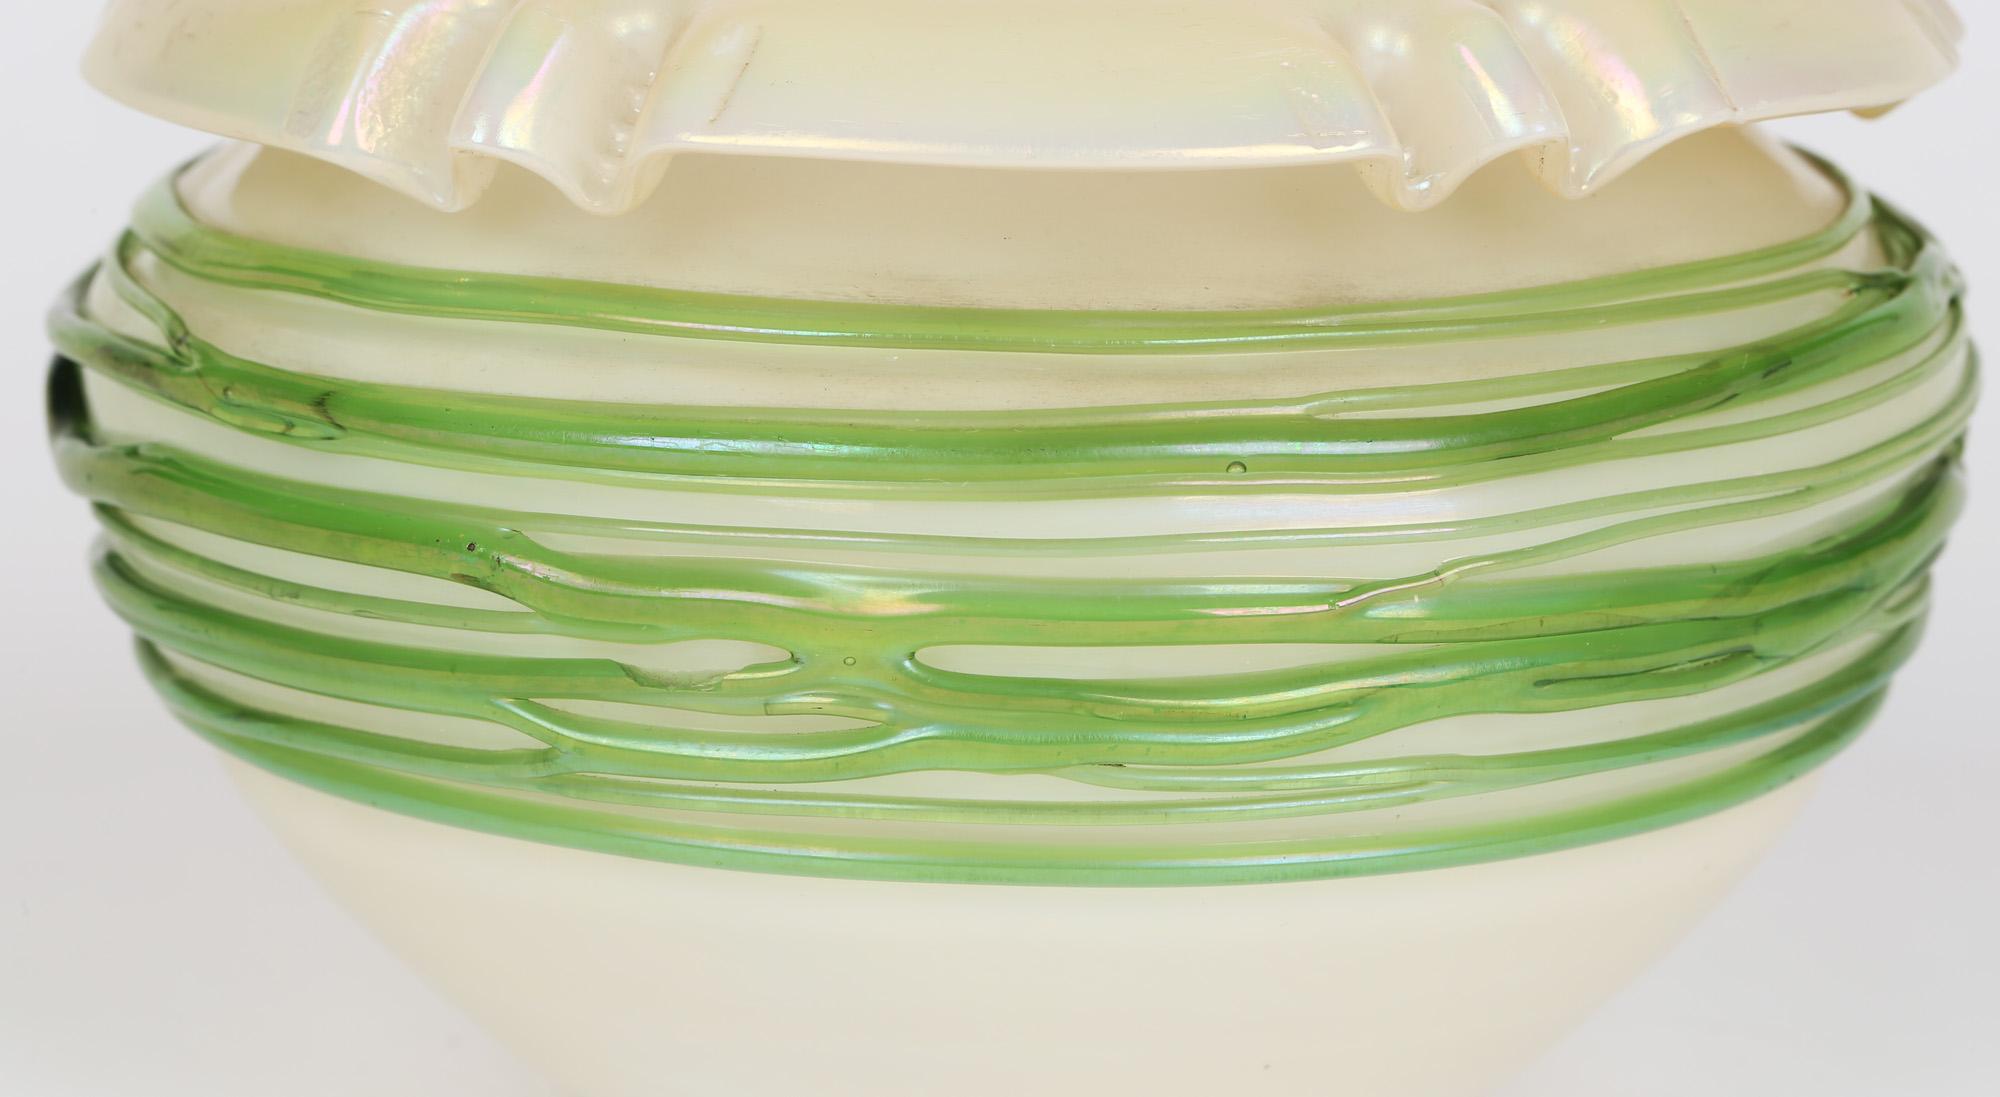 Un étonnant vase en verre irisé Art Nouveau, appliqué d'un motif de fils verts, attribué à Palme König et datant du début du 20e siècle. Les origines de cette superbe pièce ont été contestées, mais nous pensons qu'elle est d'origine bohémienne. Le